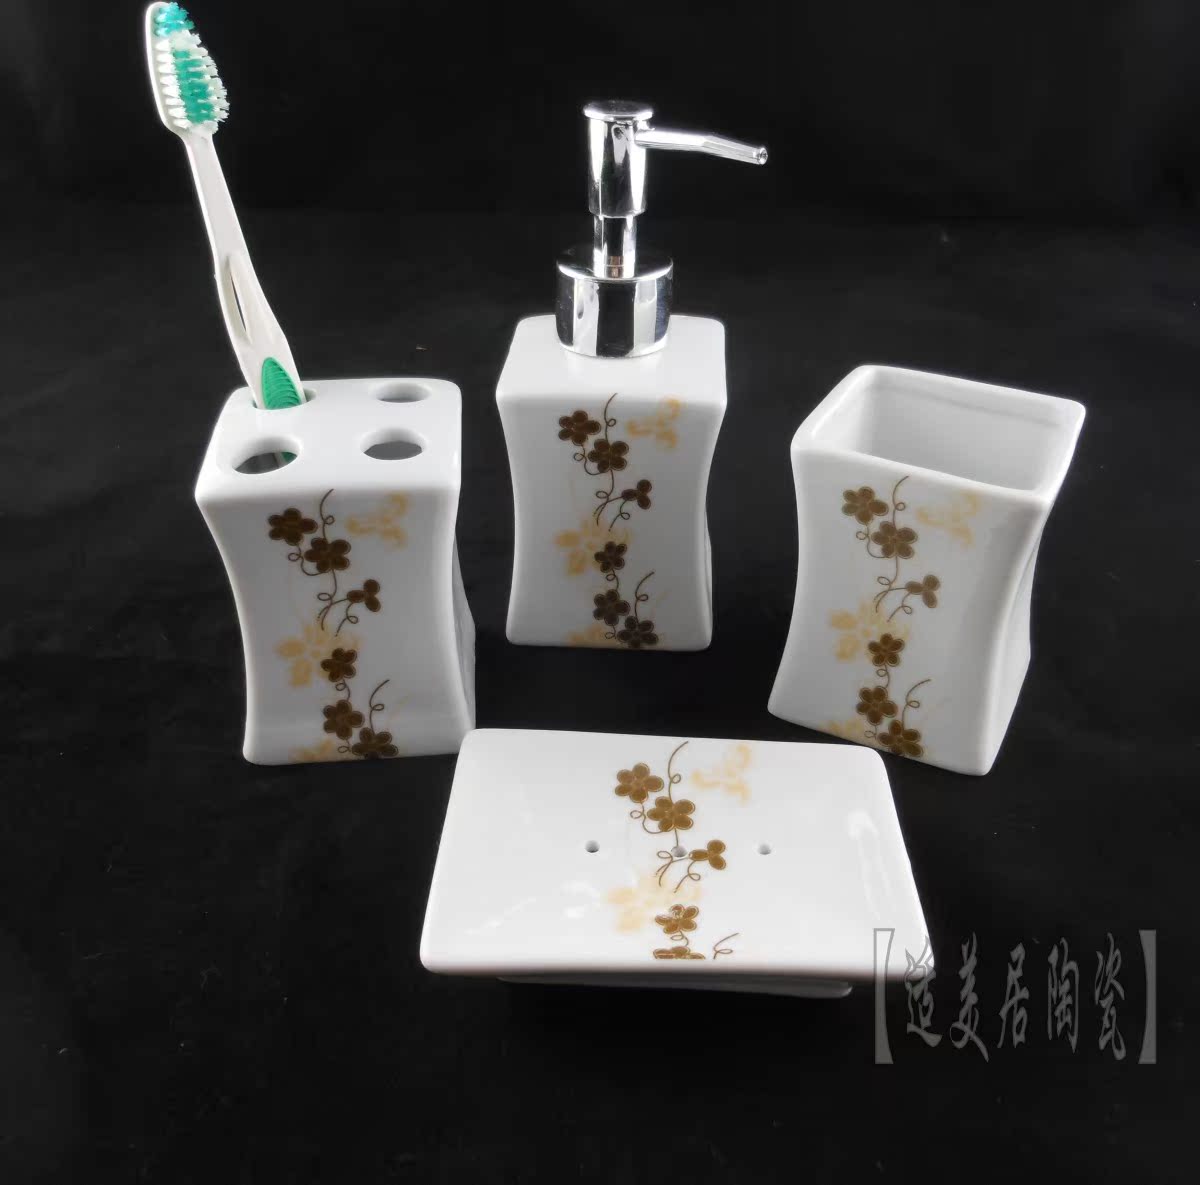 时尚浴室洗漱居家用品创意褐色条感梅花图案陶瓷个性卫浴四件套装